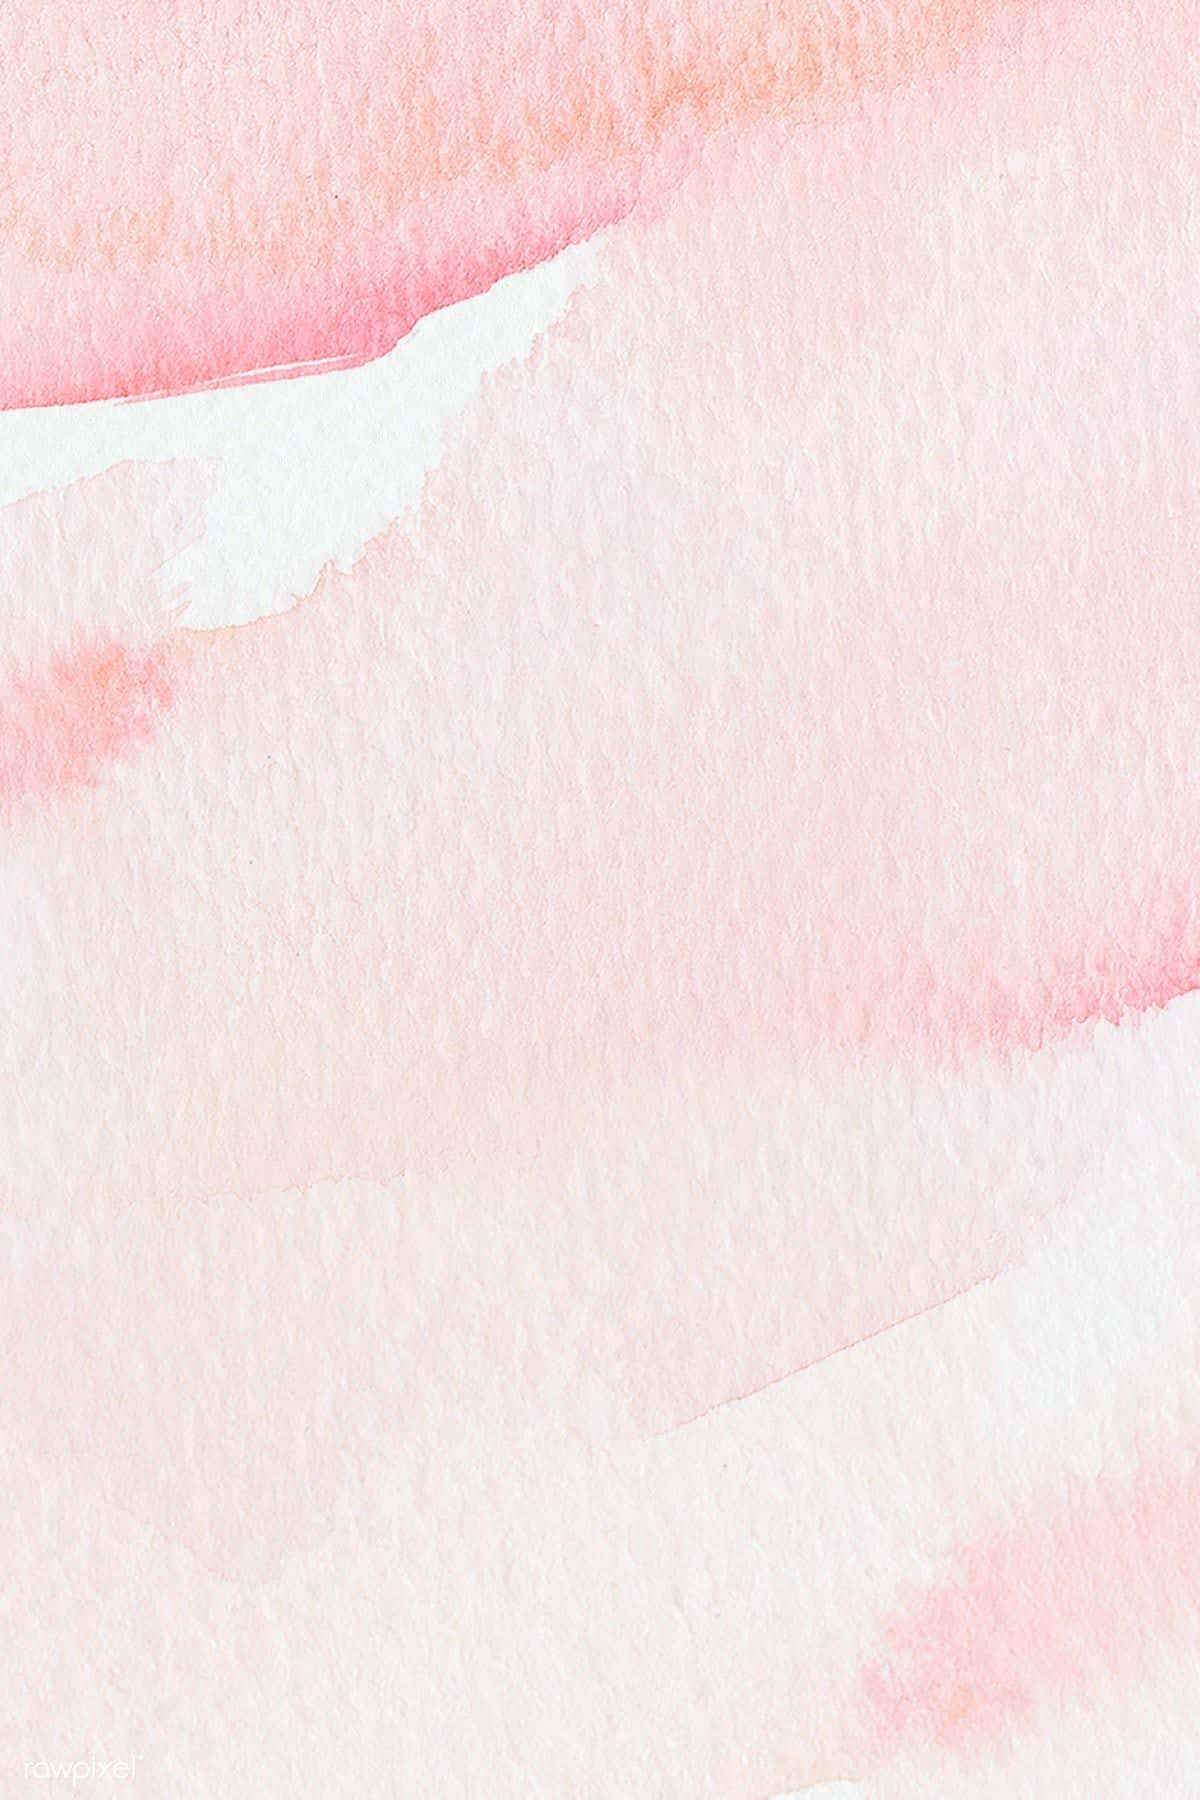 Wasserfarbenhintergrund Mit Rosa Und Weißer Wasserfarbe Wallpaper